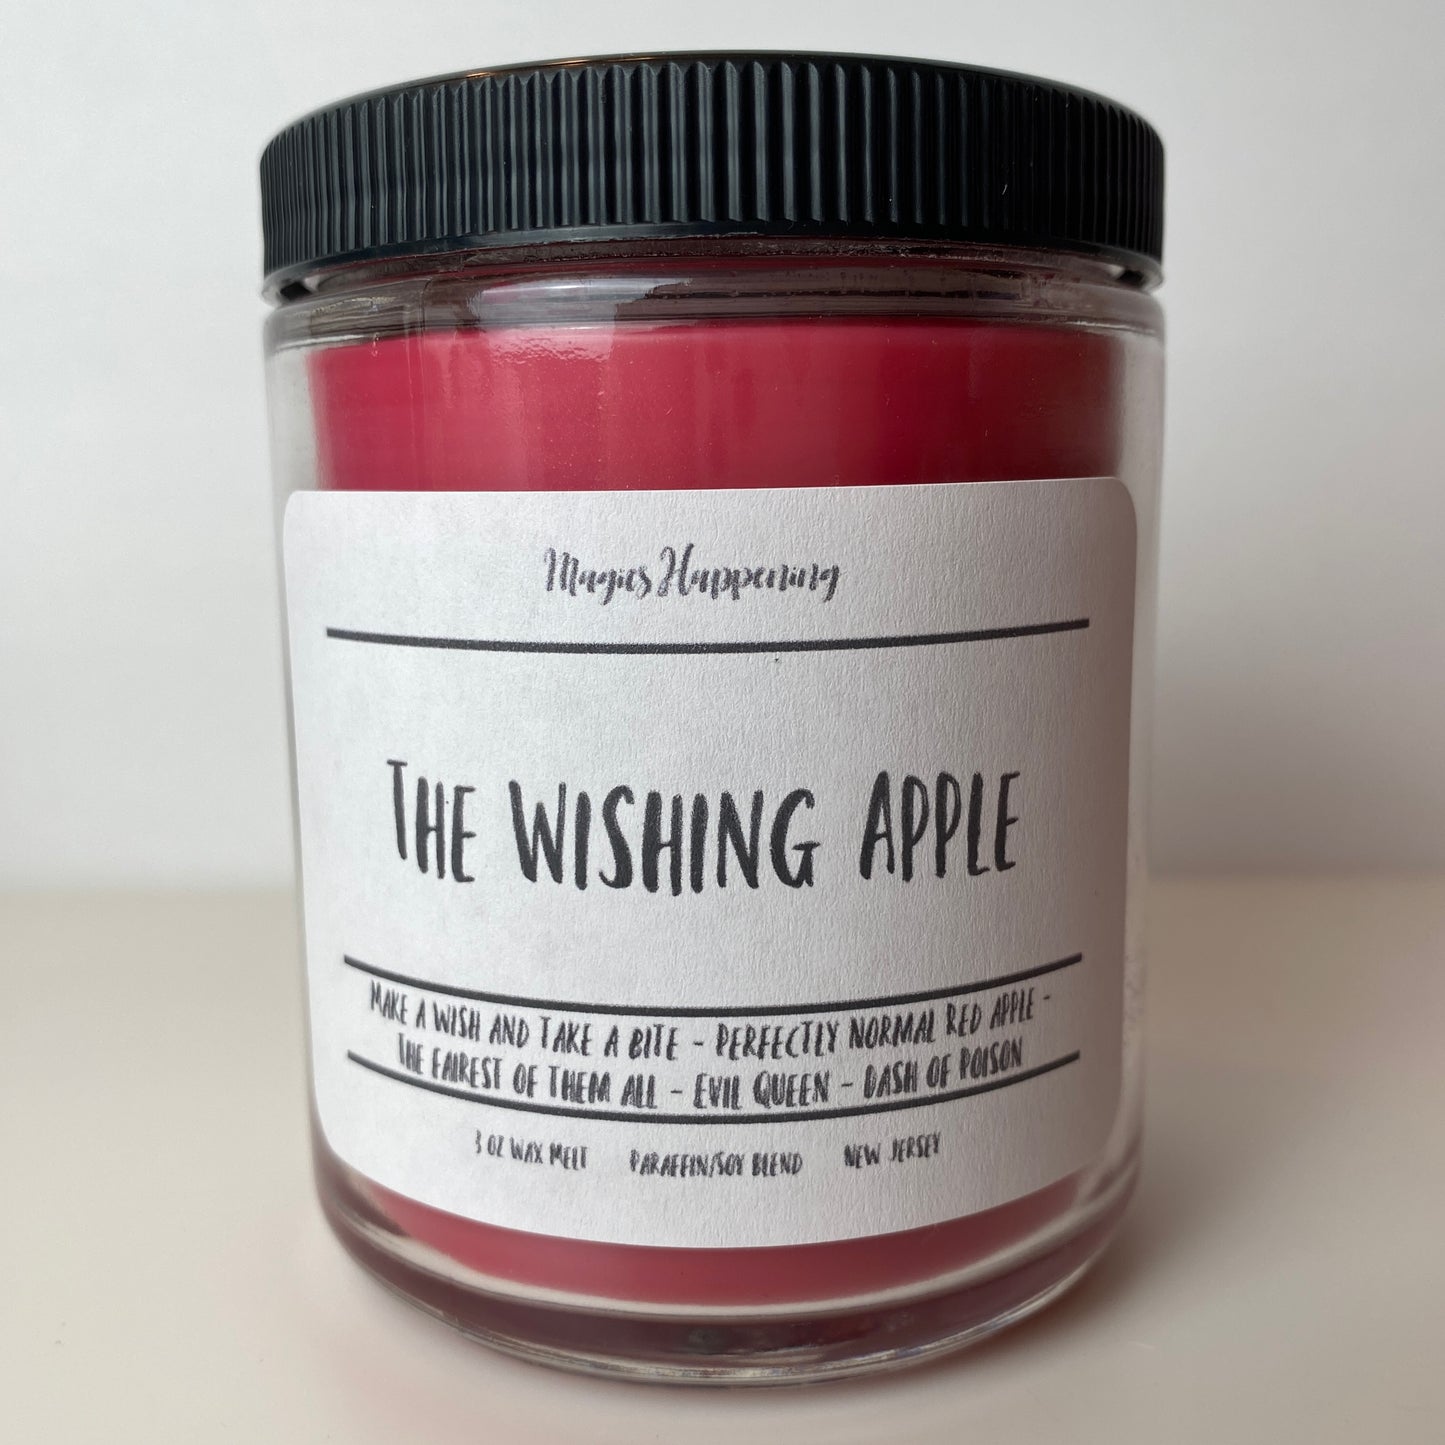 The Wishing Apple